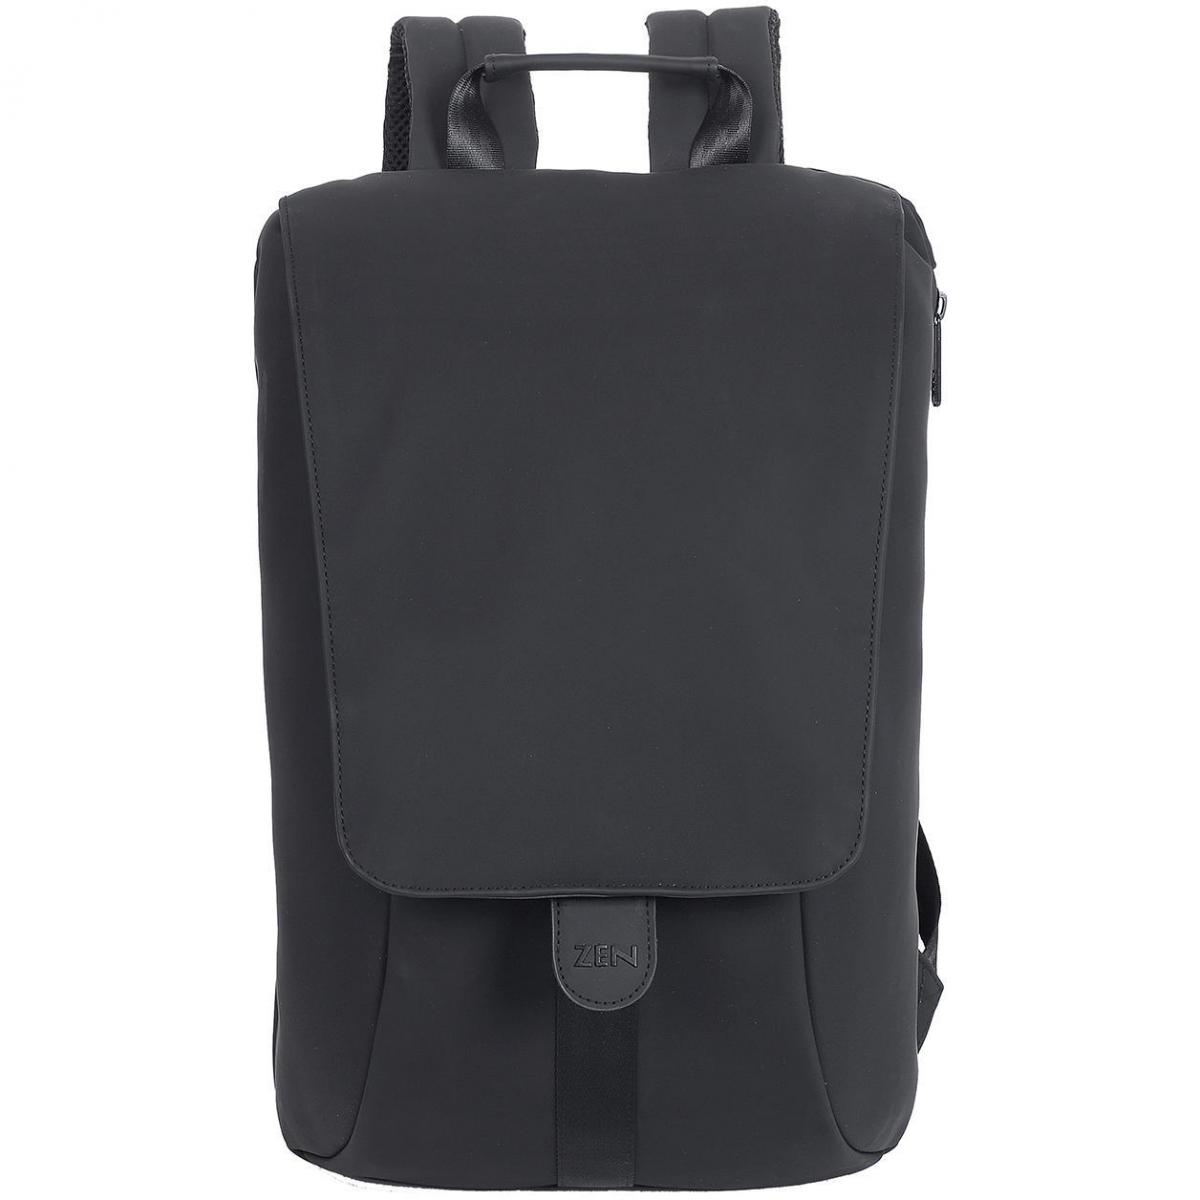 Hersteller: Shugon Herstellernummer: SH7760 Artikelbezeichnung: Amber Chic Laptop Backpack 27x12x40 cm Farbe: Black